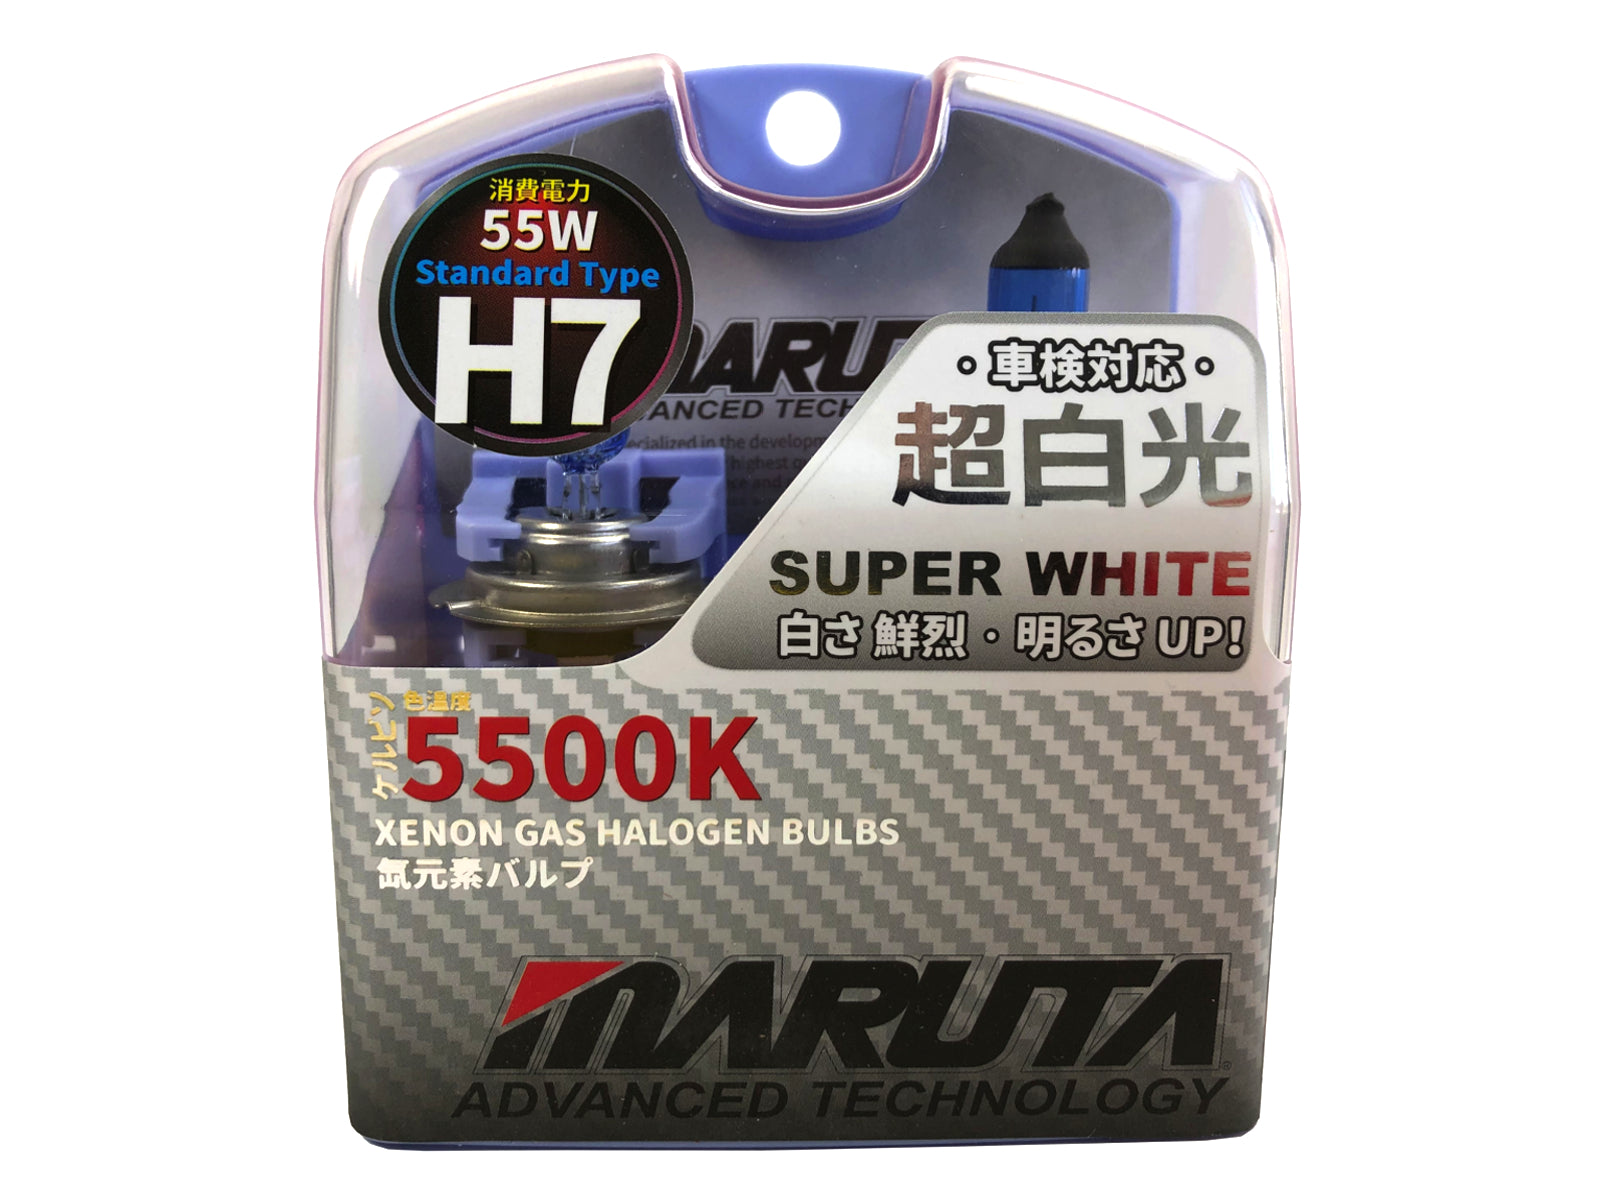 MARUTA SUPER WHITE H7 12V 55W Halogenlampe für Scheinwerfer, Abblendlicht, 5500K Xenon-Effekt, langlebige Xenon-Gas Birne mit hochwertigem Quarzglas & Straßenzulassung (ECE Prüfzeichen) - Bild 1